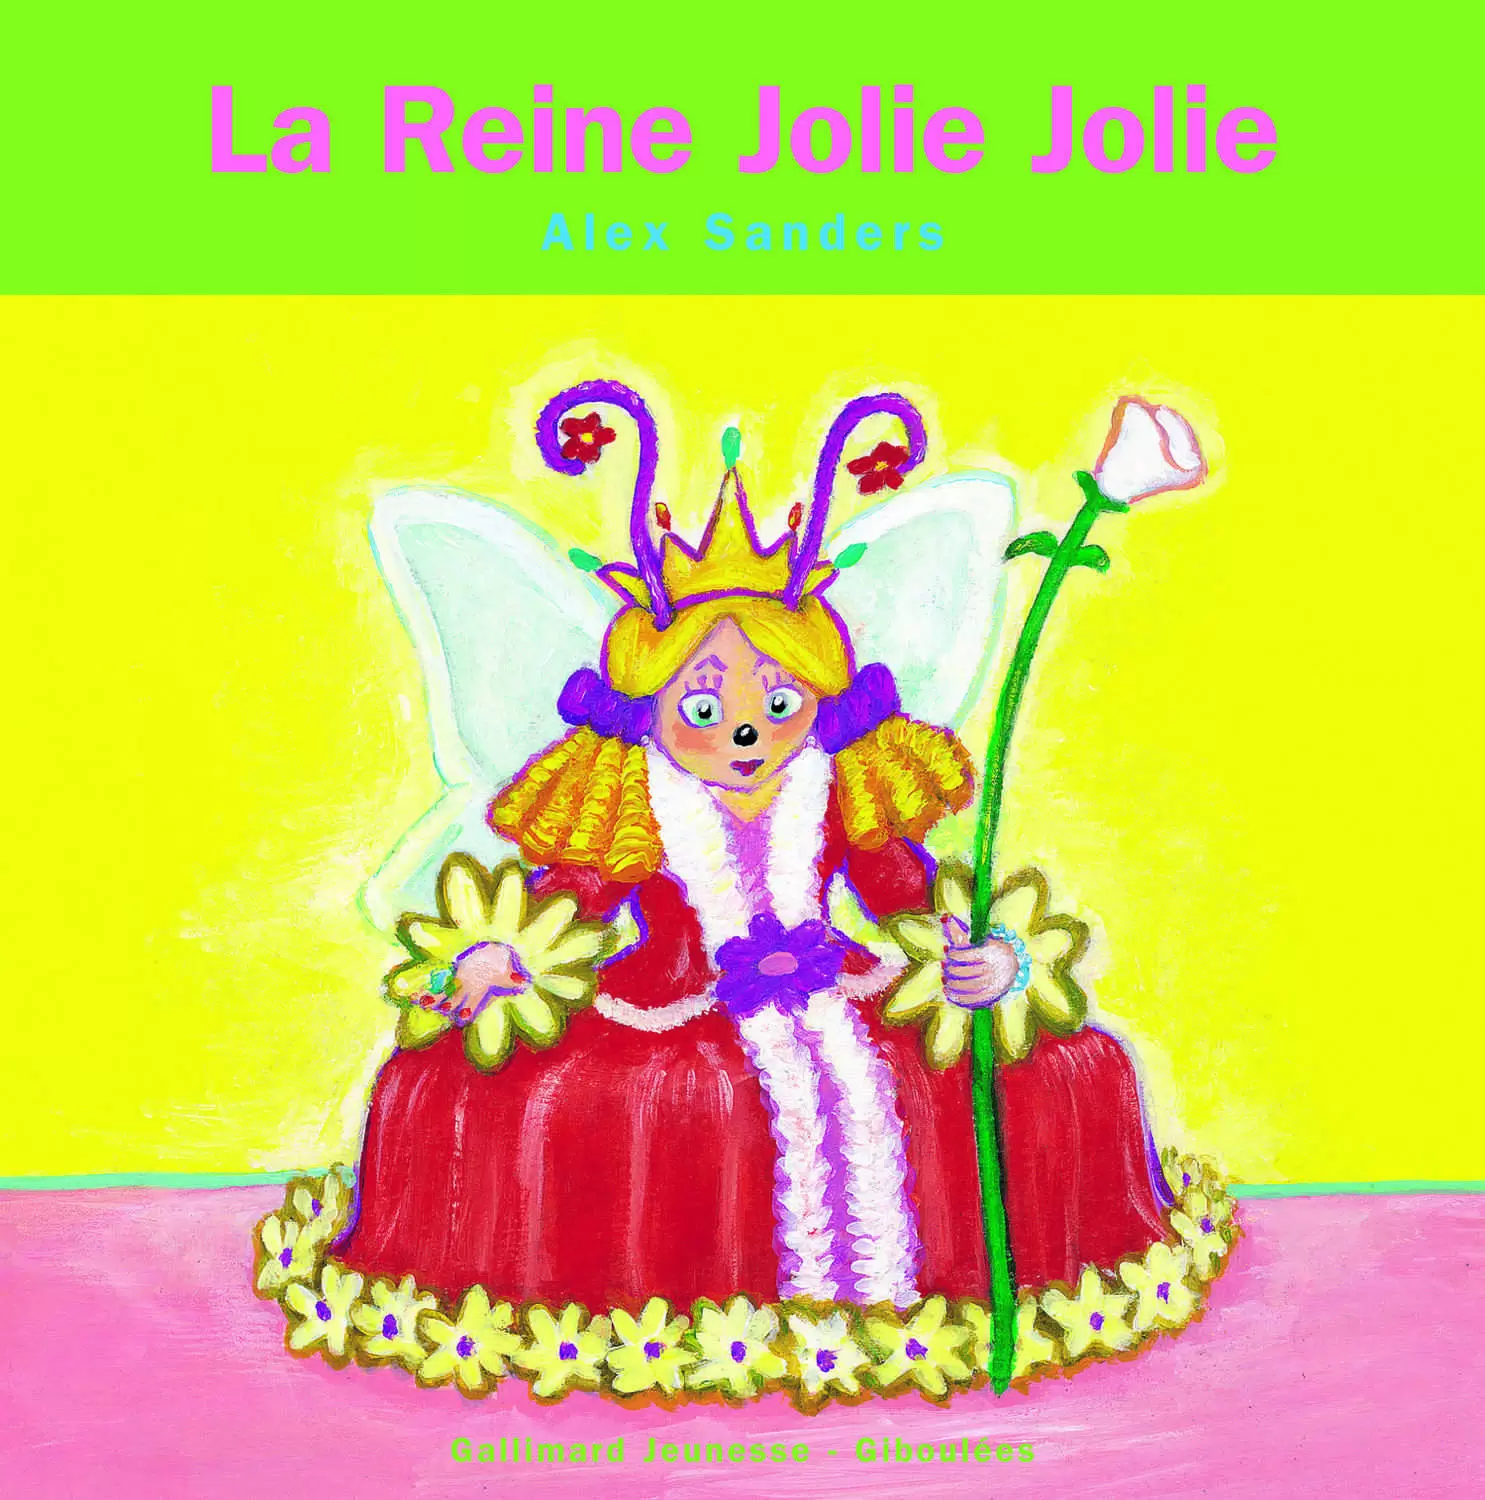 Les Rois Les Reines - La Reine Jolie Jolie